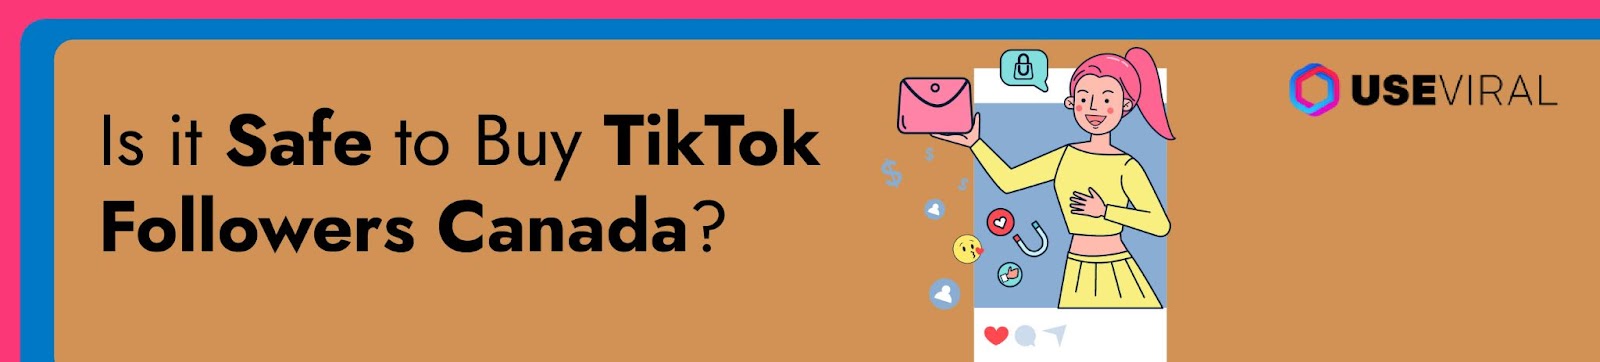 Is it Safe to Buy TikTok Followers Canada?